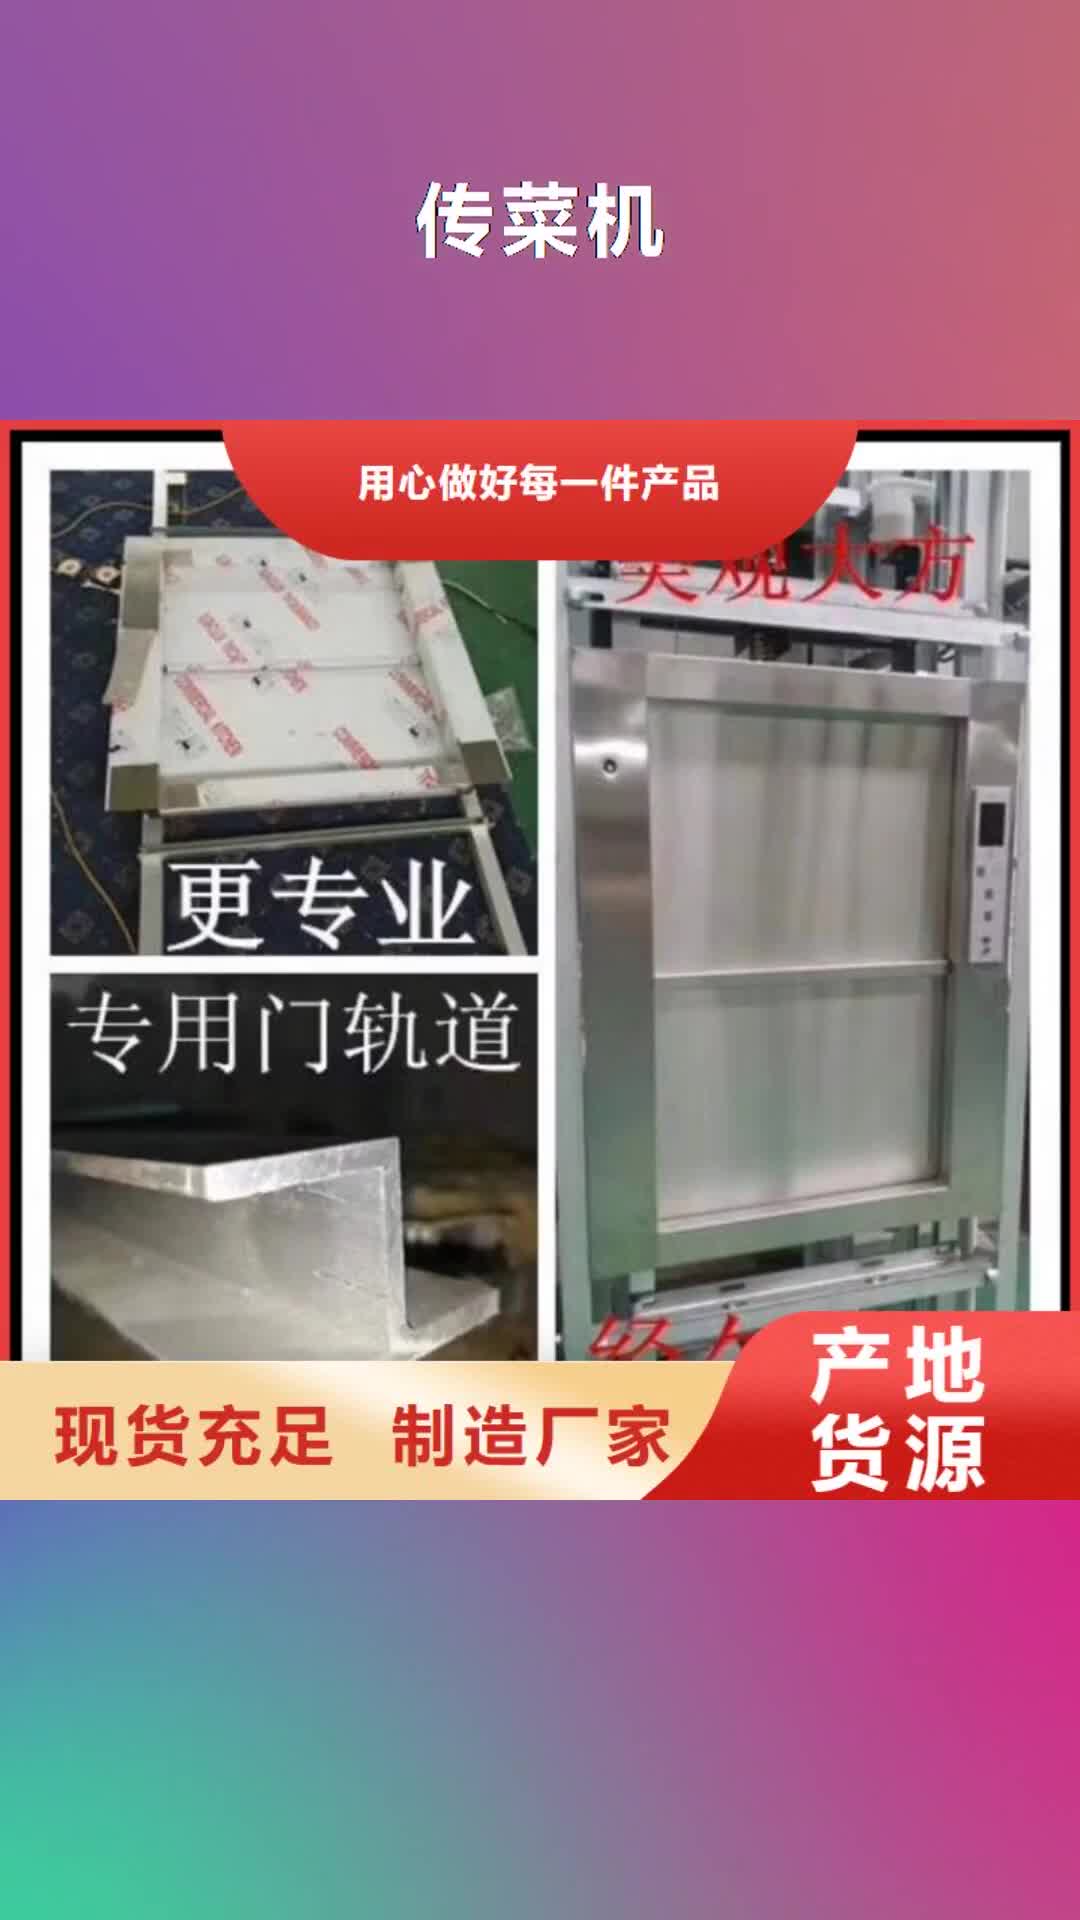 新余【传菜机】-传菜电梯厂家超产品在细节